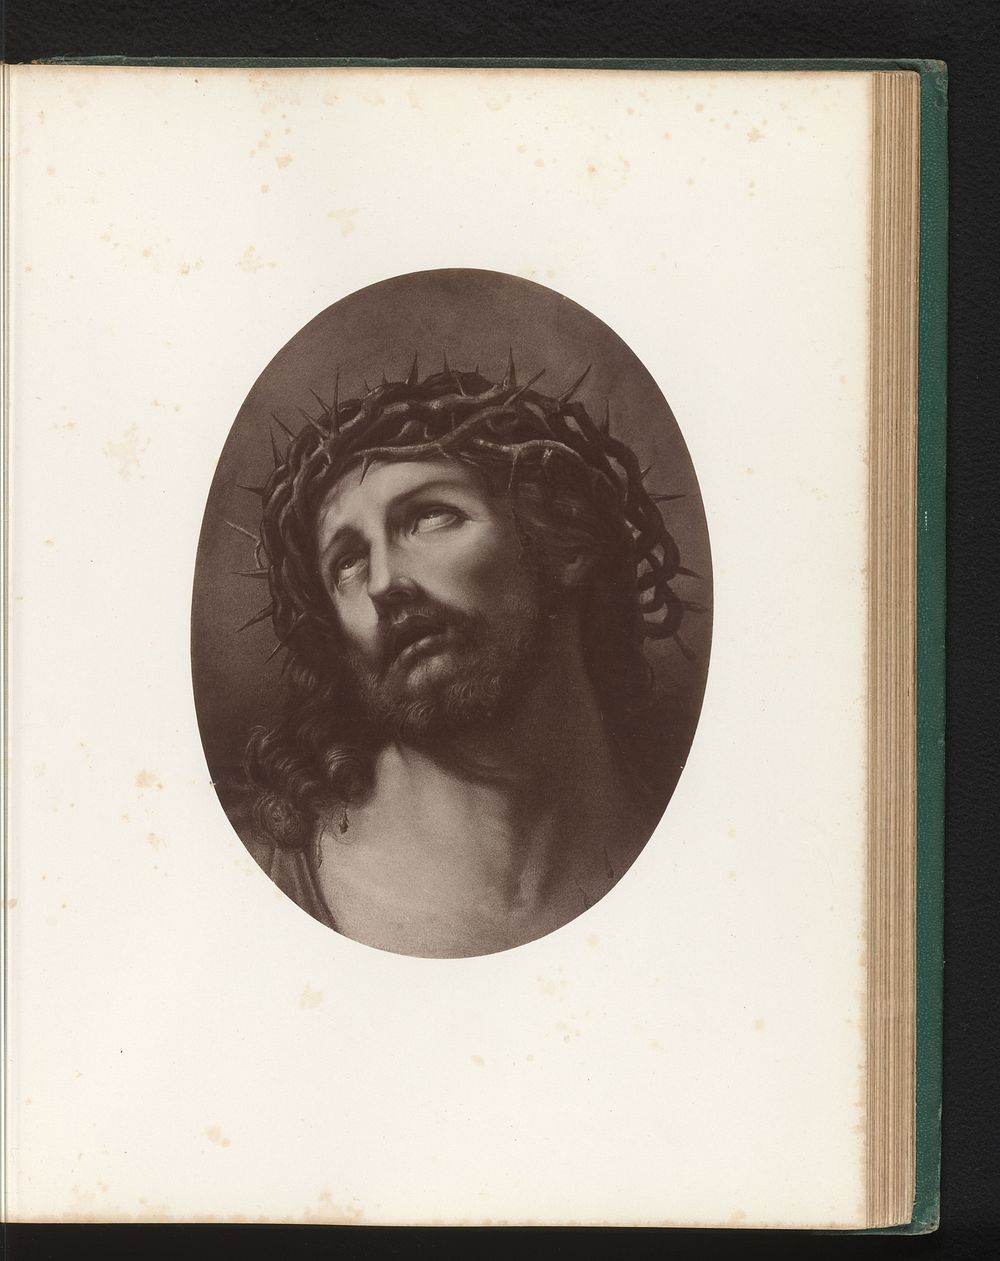 Fotoreproductie van het schilderij Ecce Homo door Guido Reni (c. 1870 - in or before 1875) by anonymous, Guido Reni and…